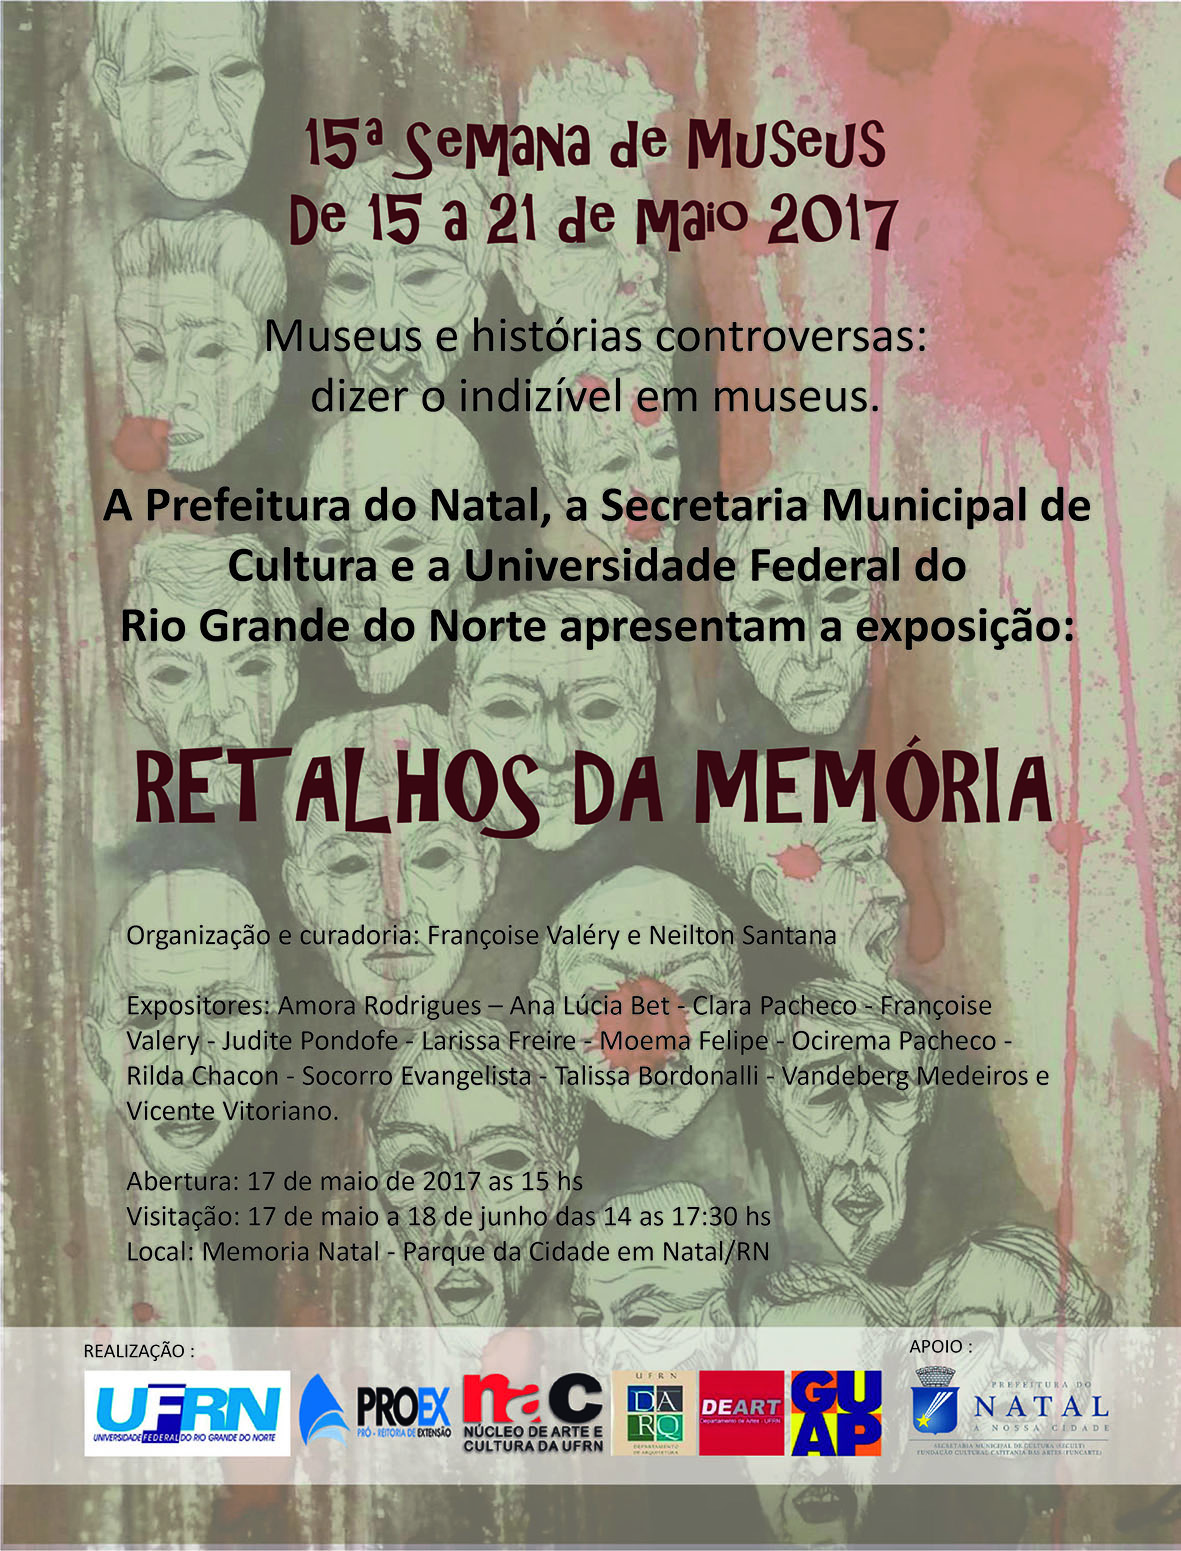 EXPOSIÇÃO “RETALHOS DA MEMÓRIA” ABRE NESTA QUARTA NO MEMORIAL NATAL DENTRO DA SEMANA NACIONAL DOS MUSEUS